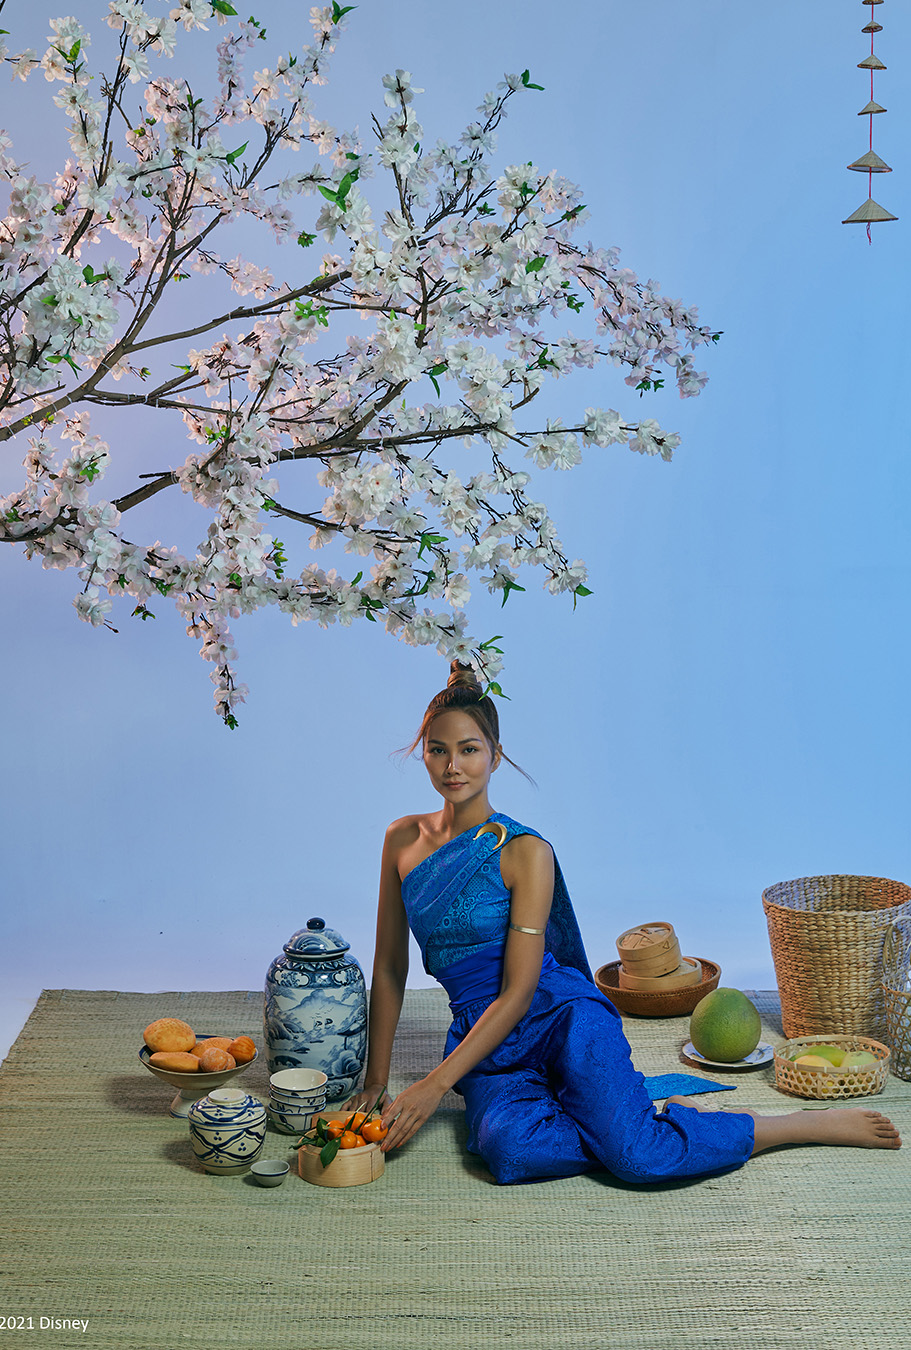 Mang âm hưởng mùa xuân với tông màu nhẹ nhàng, H'hen Niê diện trang phục đầu tiên lấy cảm hứng từ những bộ đồ truyền thống của Thái Lan. Từ thiết kế đến kiểu tóc và trang điểm đều mang phong cách phụ nữ xứ Chùa Vàng.